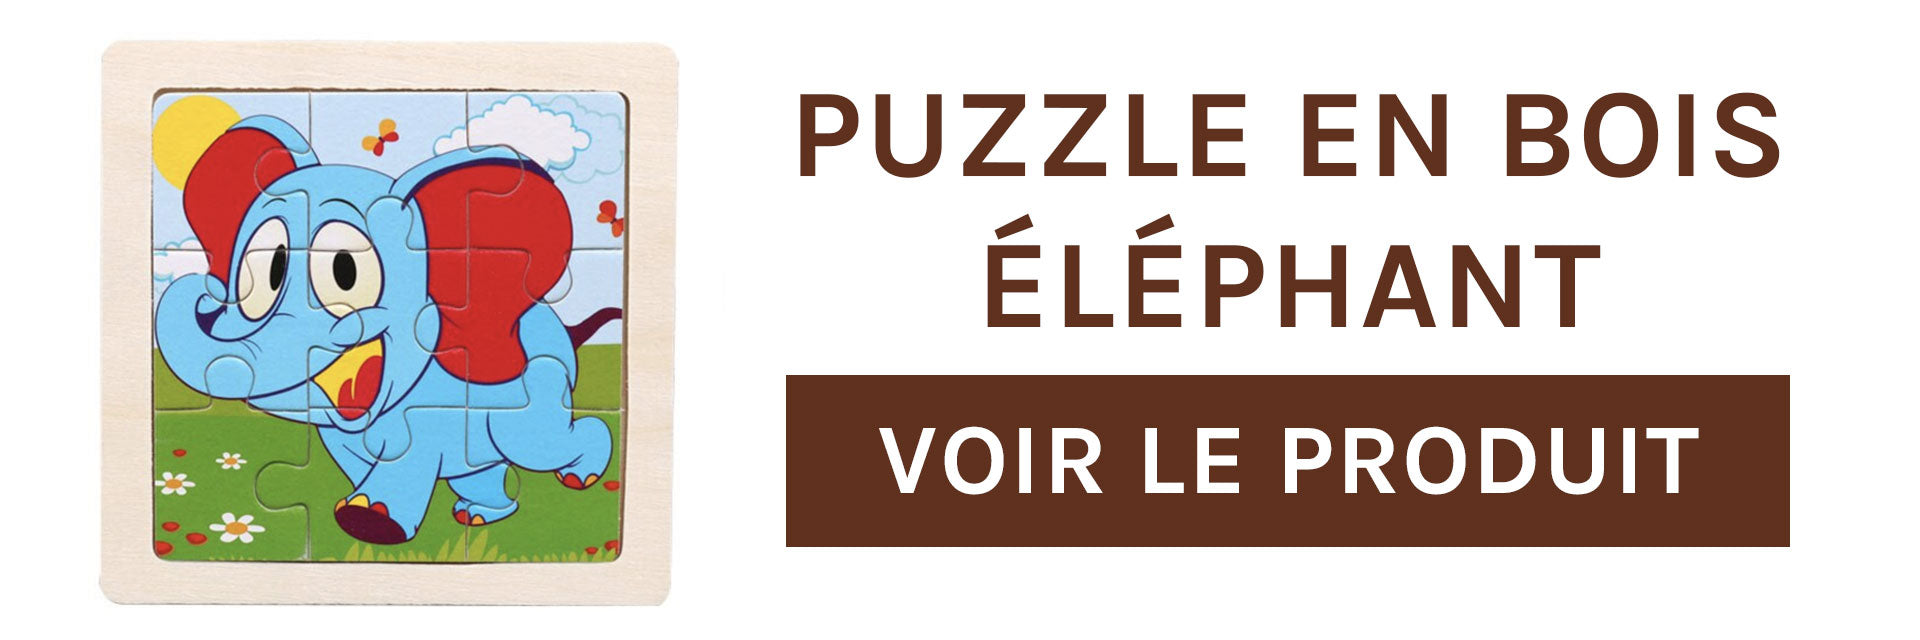 puzzle-en-bois-elephant